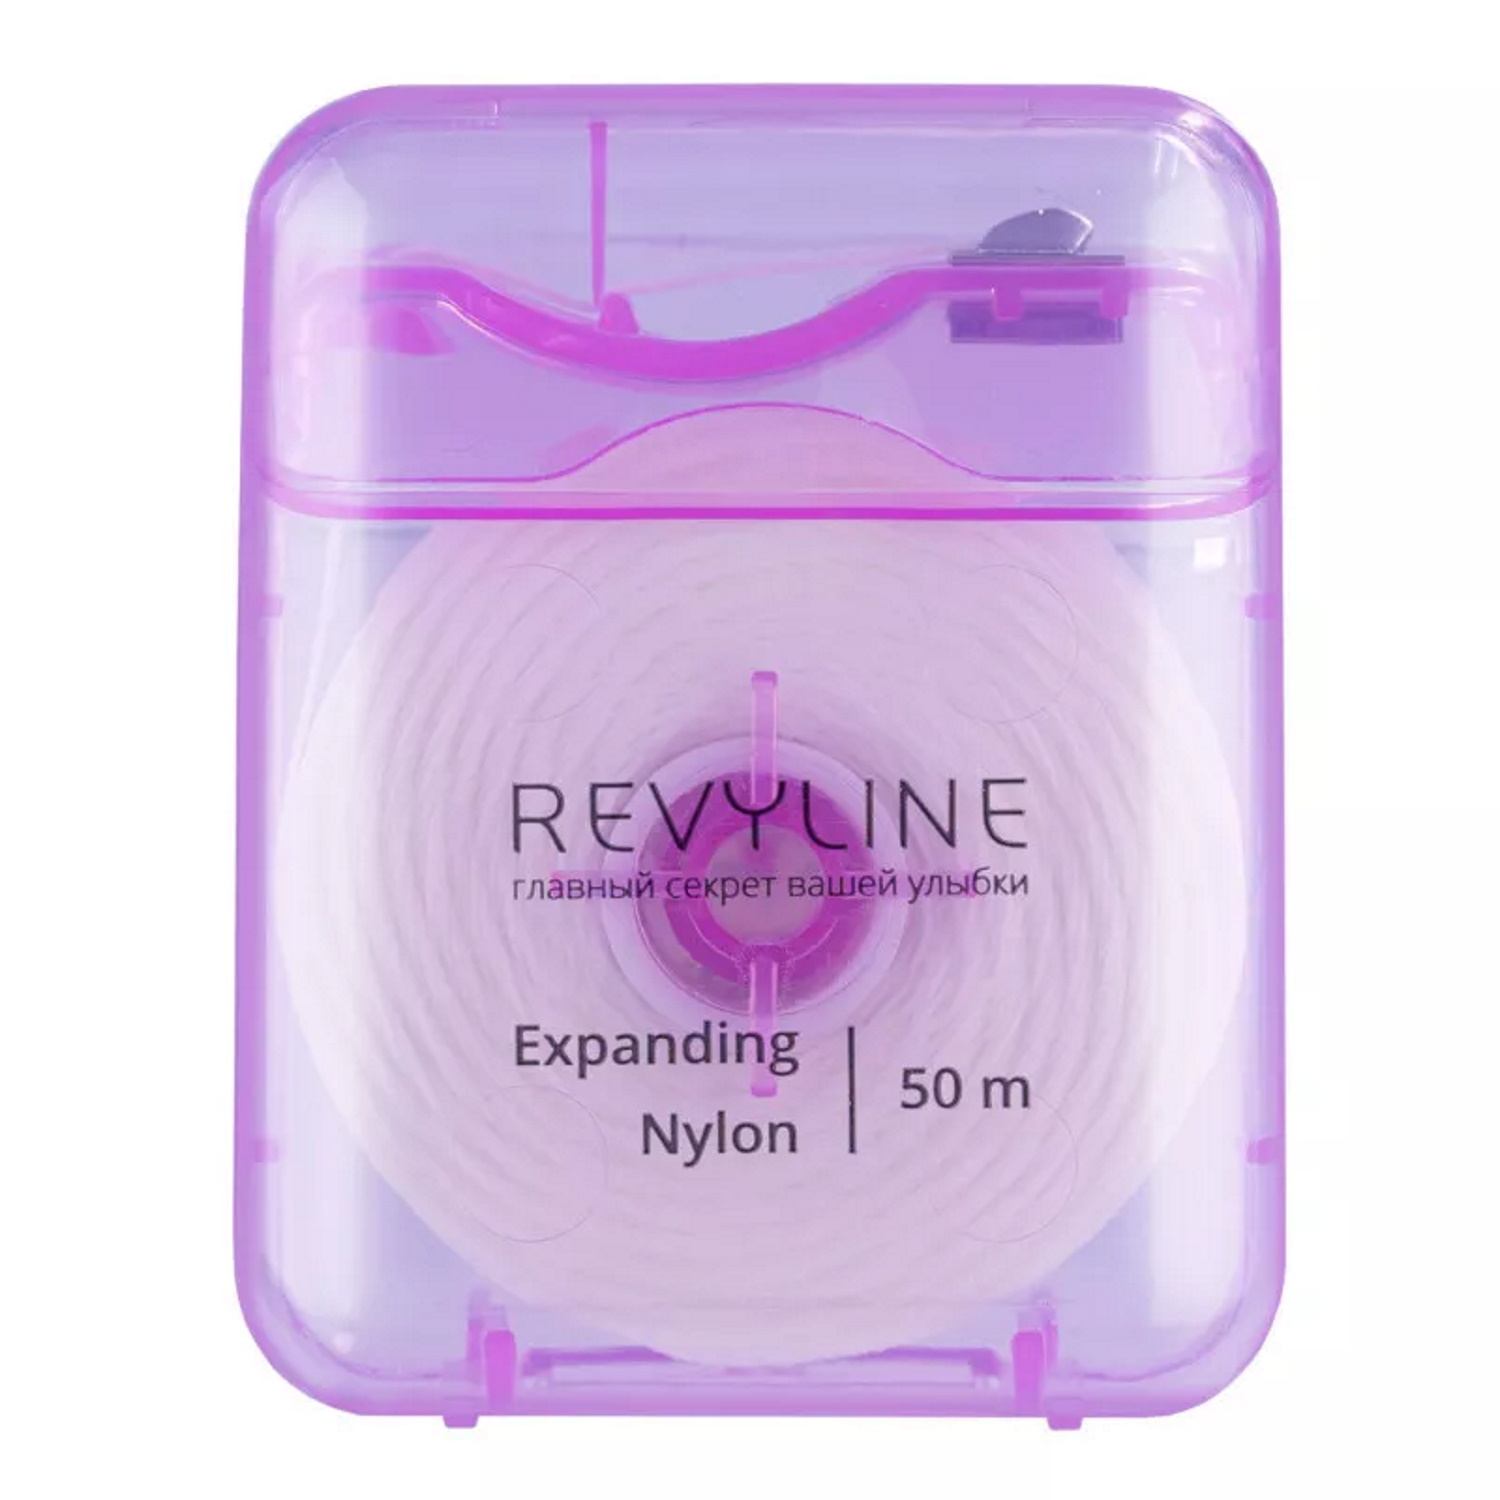 Зубная нить Revyline 840D Expanding floss нейлон вощеная 50 м - фото 1